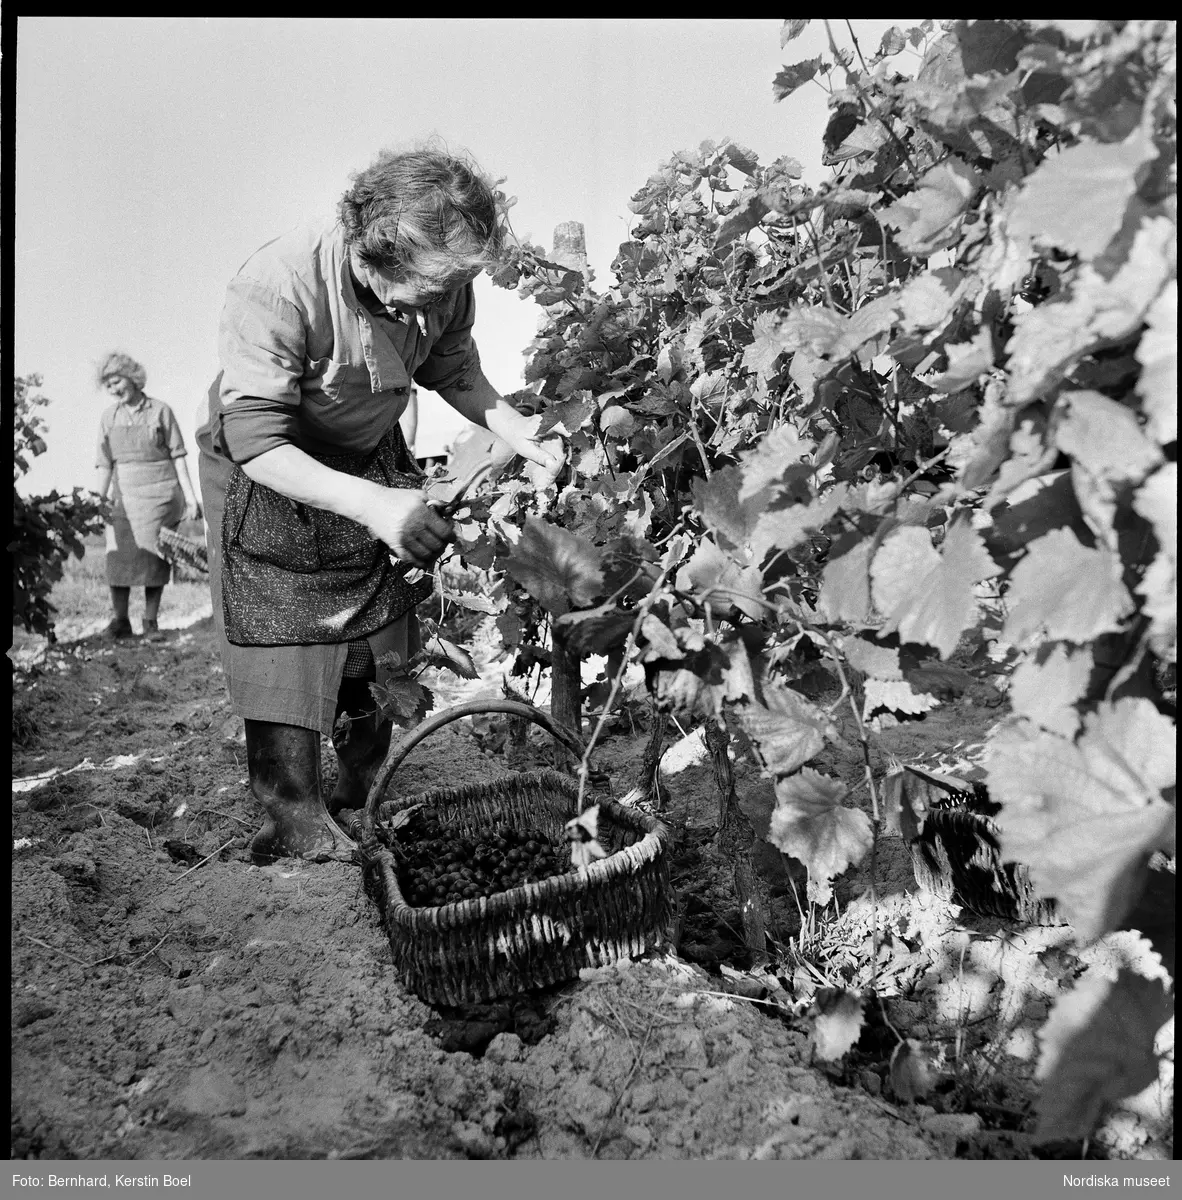 Frankrike, Loire-dalen, Muscadet.
Kvinnor skördar vindruvor och lägger dem i korgar.